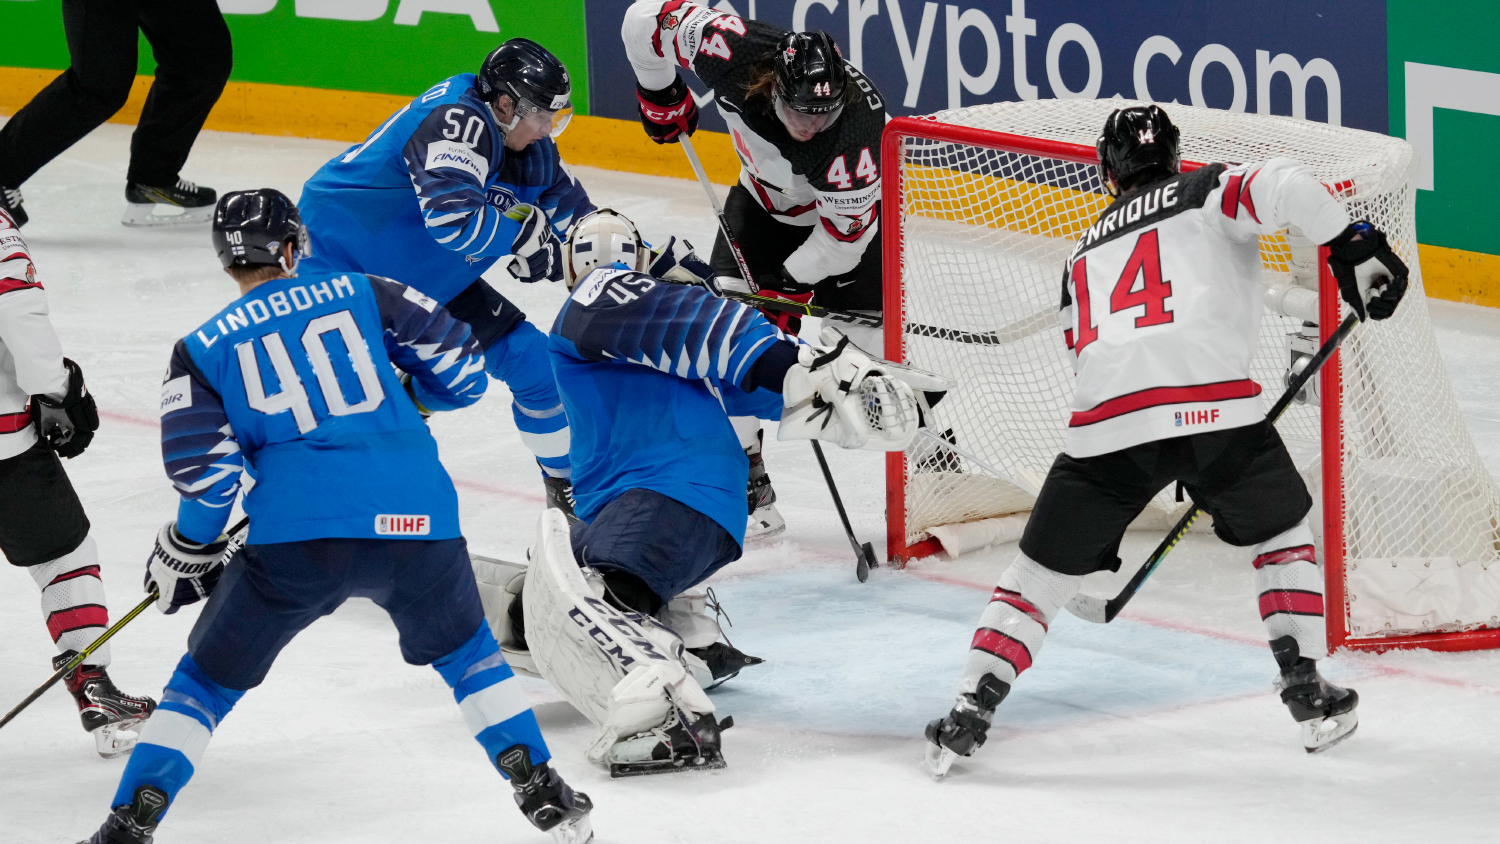 Хоккей чемпионат фонбет 1 8. ЧМ по хоккею 2021 Канада Финляндия. ЧМ 2021 по хоккею финал Канада Финляндия. Хоккей сборная Финляндии 2021.